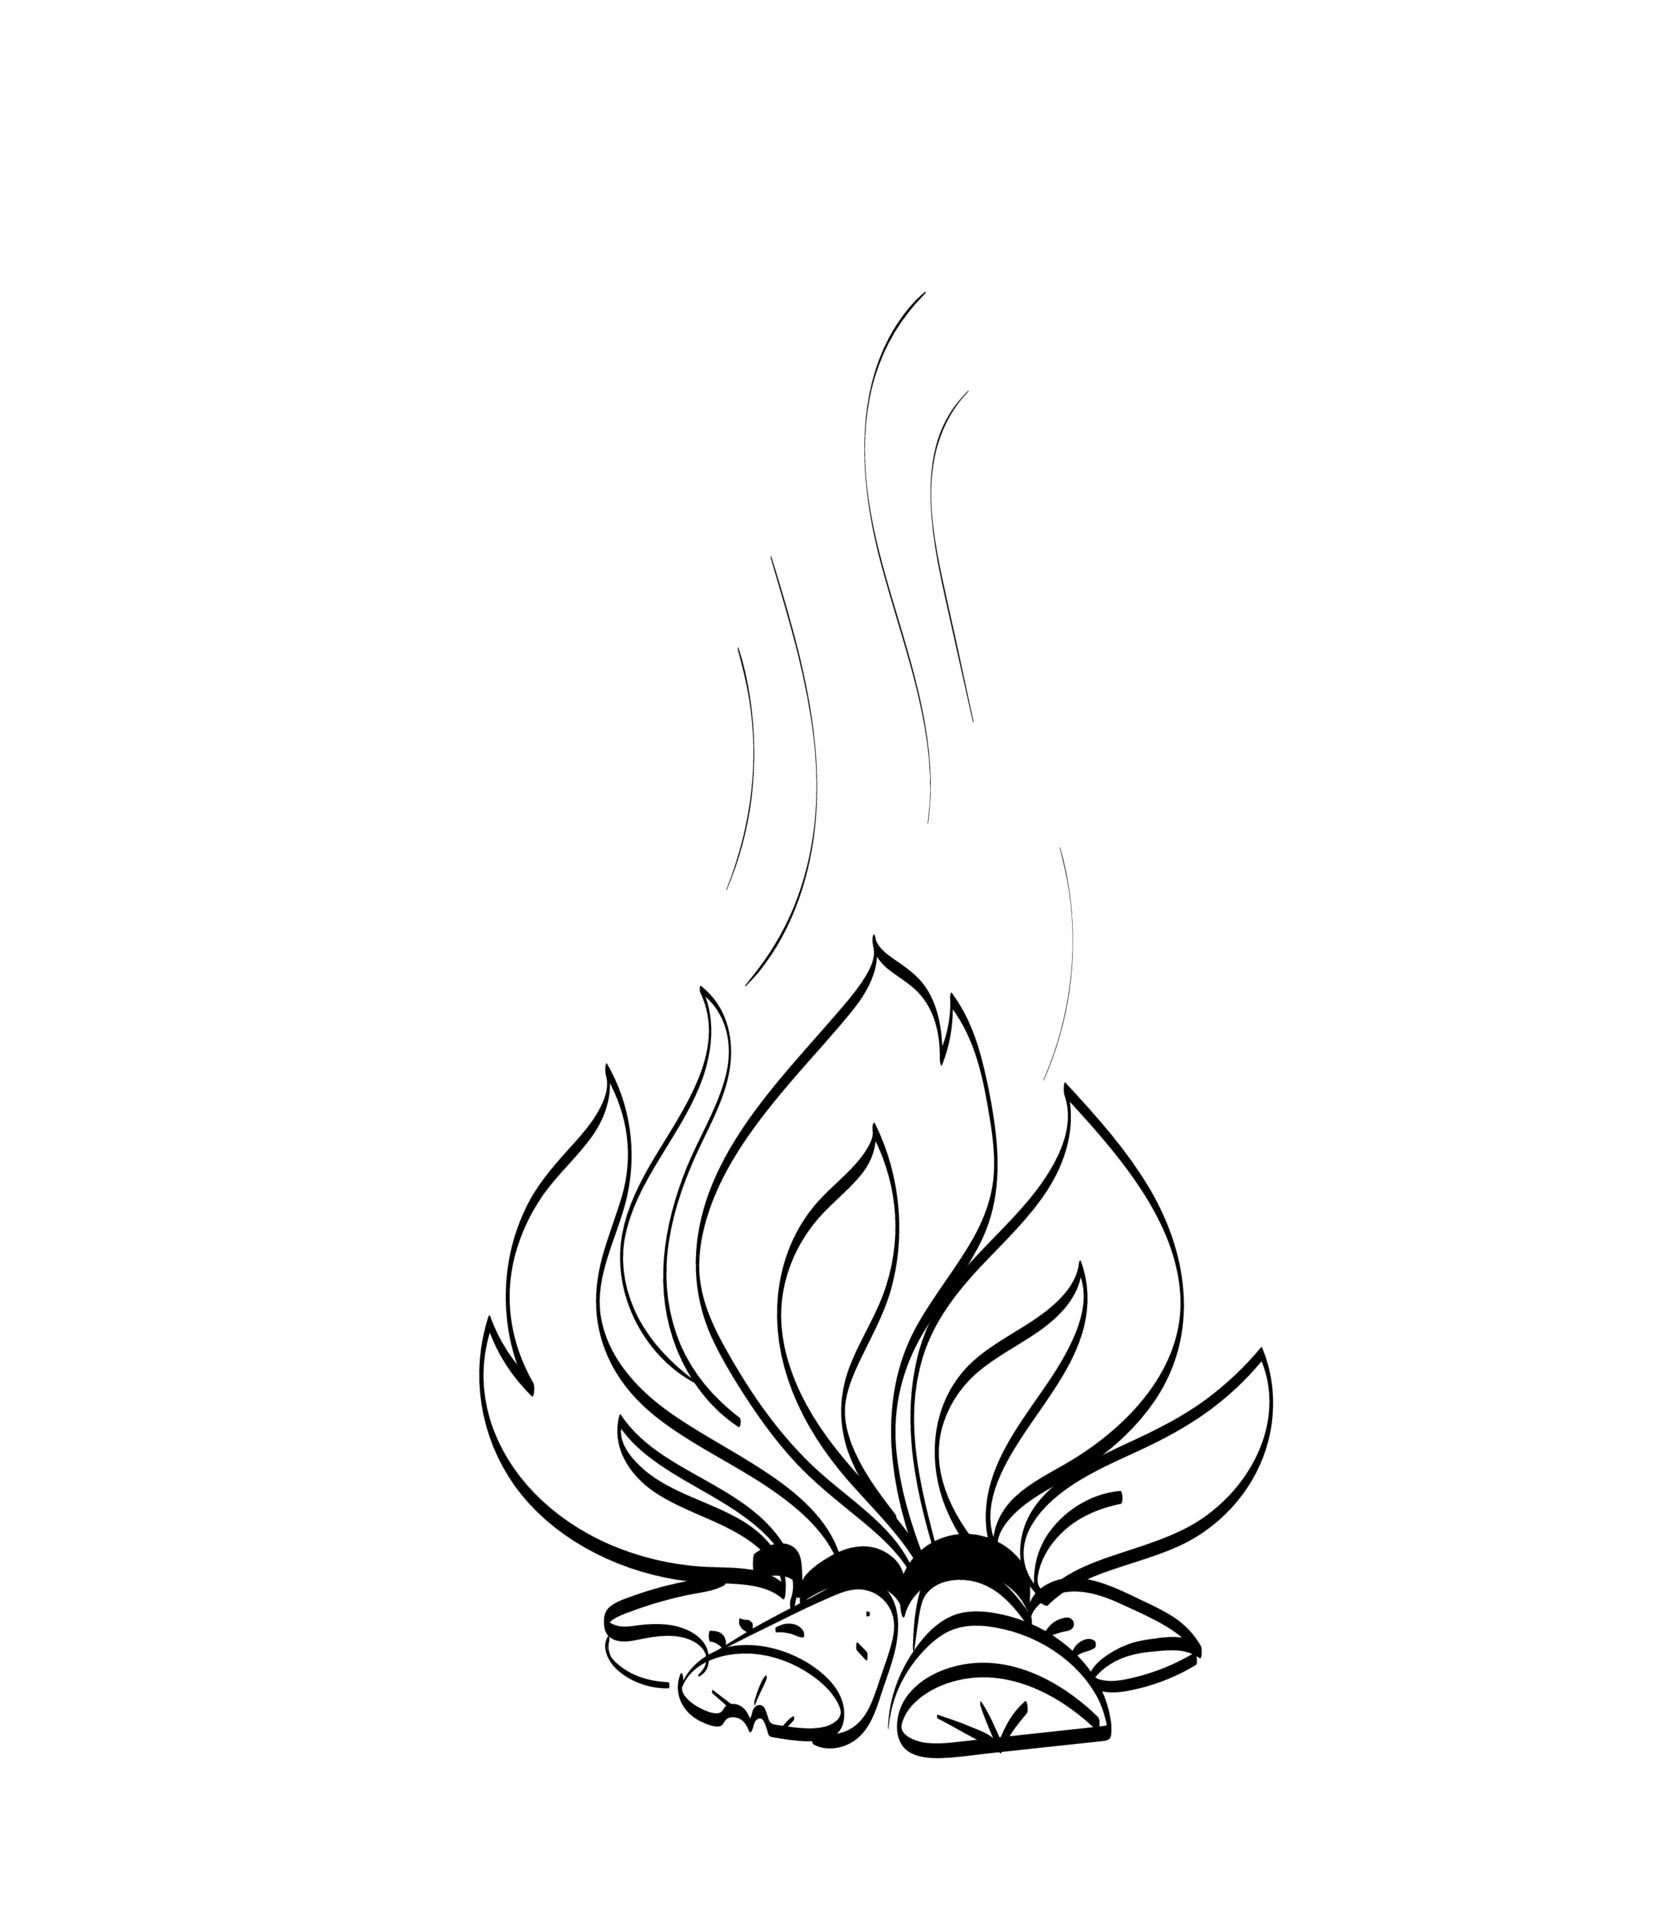 vetor doodles ilustração de chamas de fogo desenhada de mão. desenho preto  e branco. 12250762 Vetor no Vecteezy